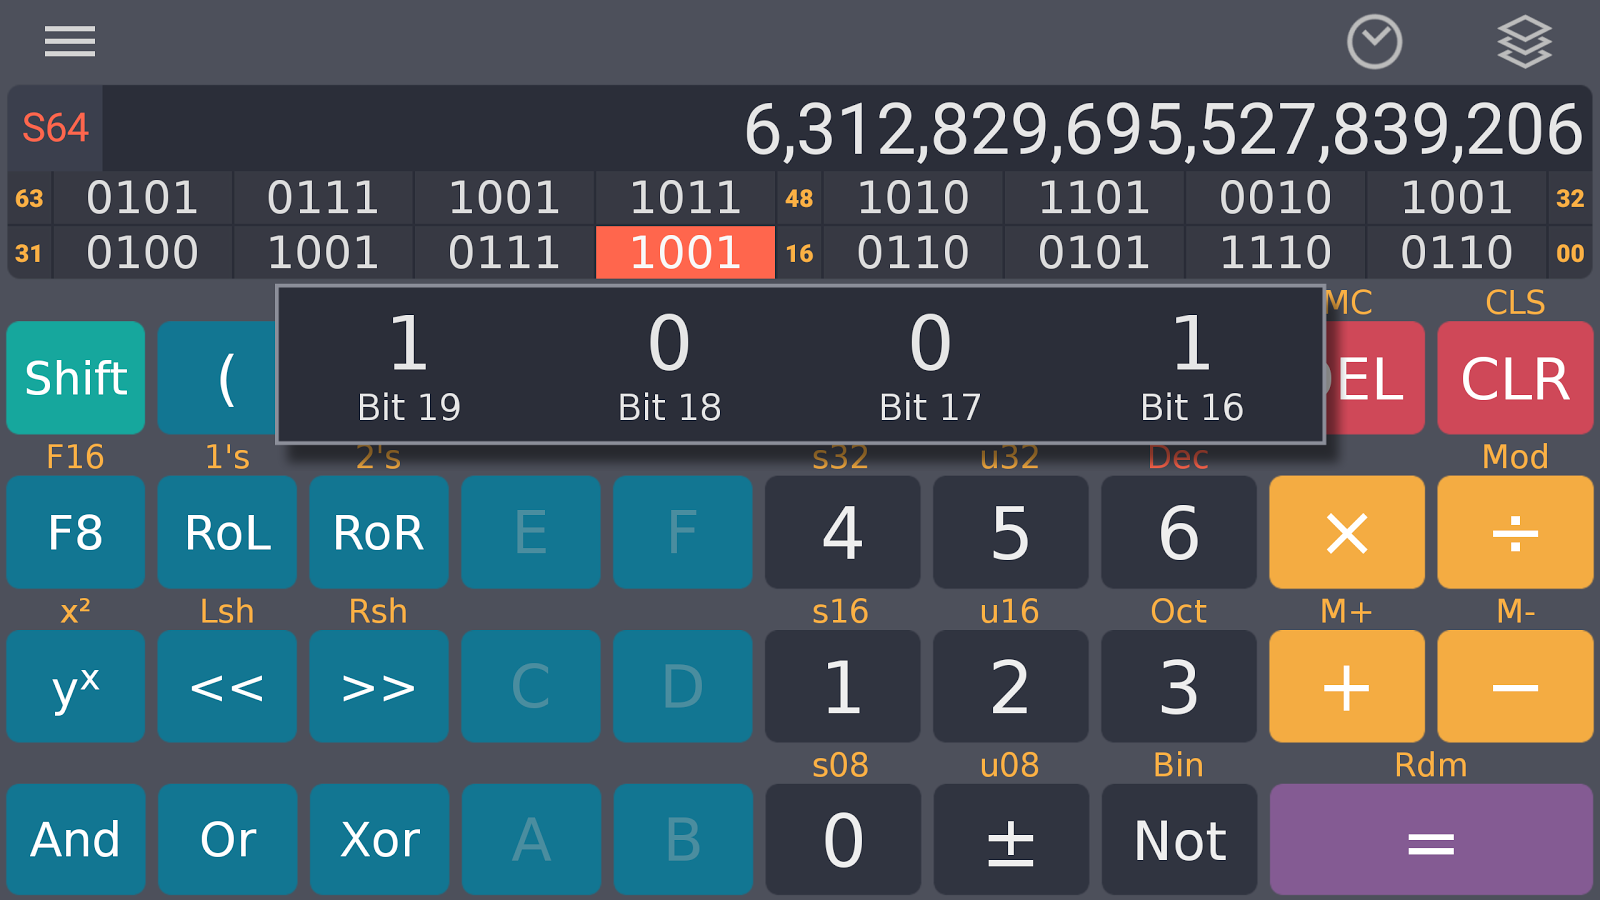 Scientific Calculator Plus